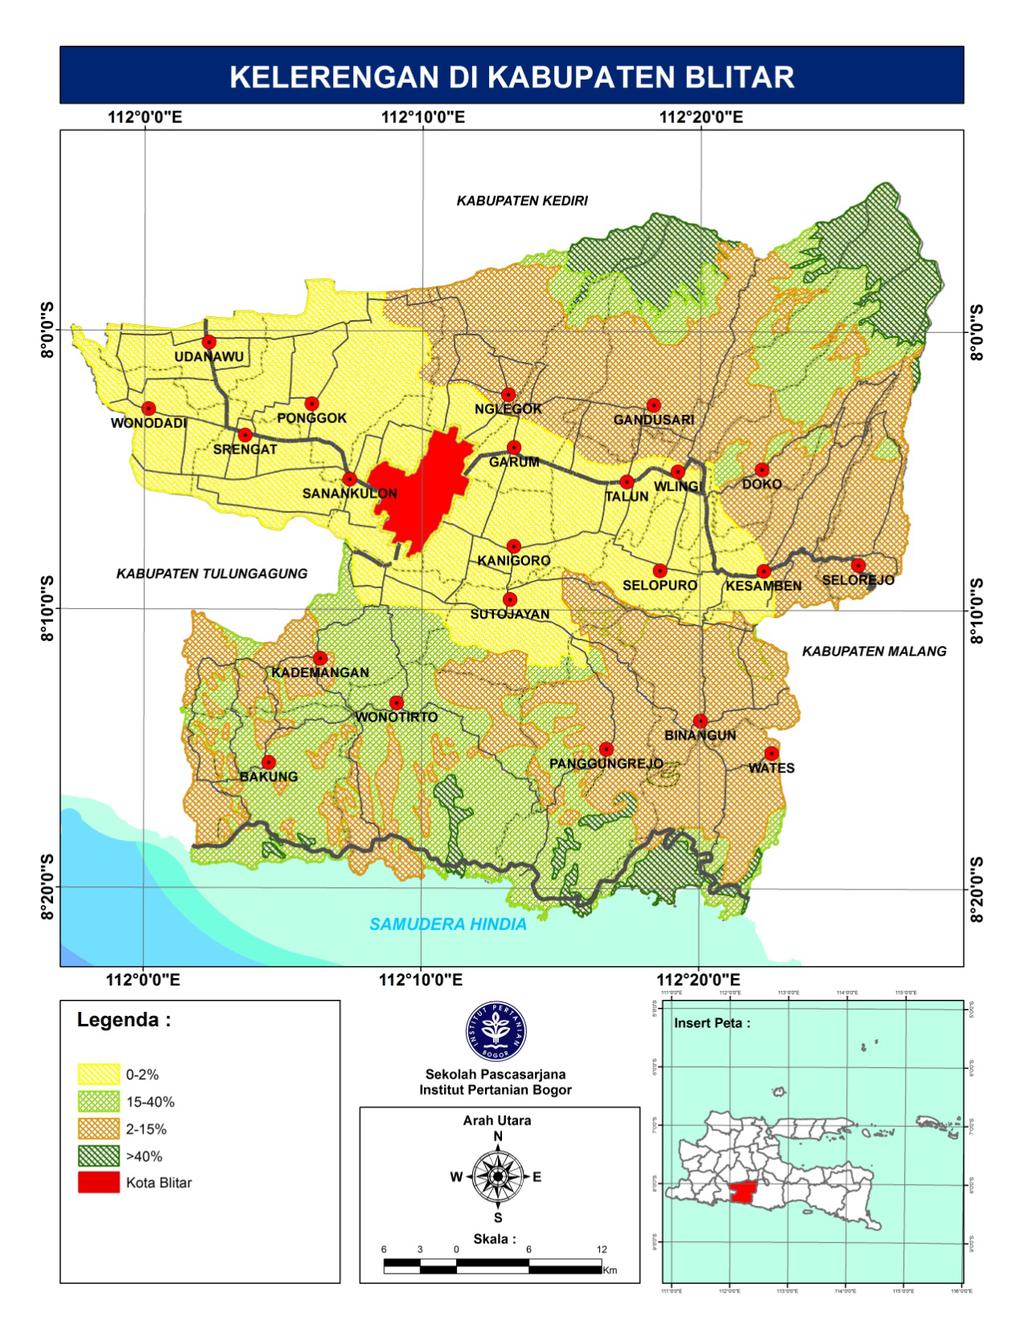 32 Wilayah Kabupaten Blitar Selatan, sebagian besar merupakan wilayah perbukitan dengan kelerengan rata-rata 15-40 persen, hanya sebagian kecil yaitu di sekitar DAS Brantas topografinya agak landai